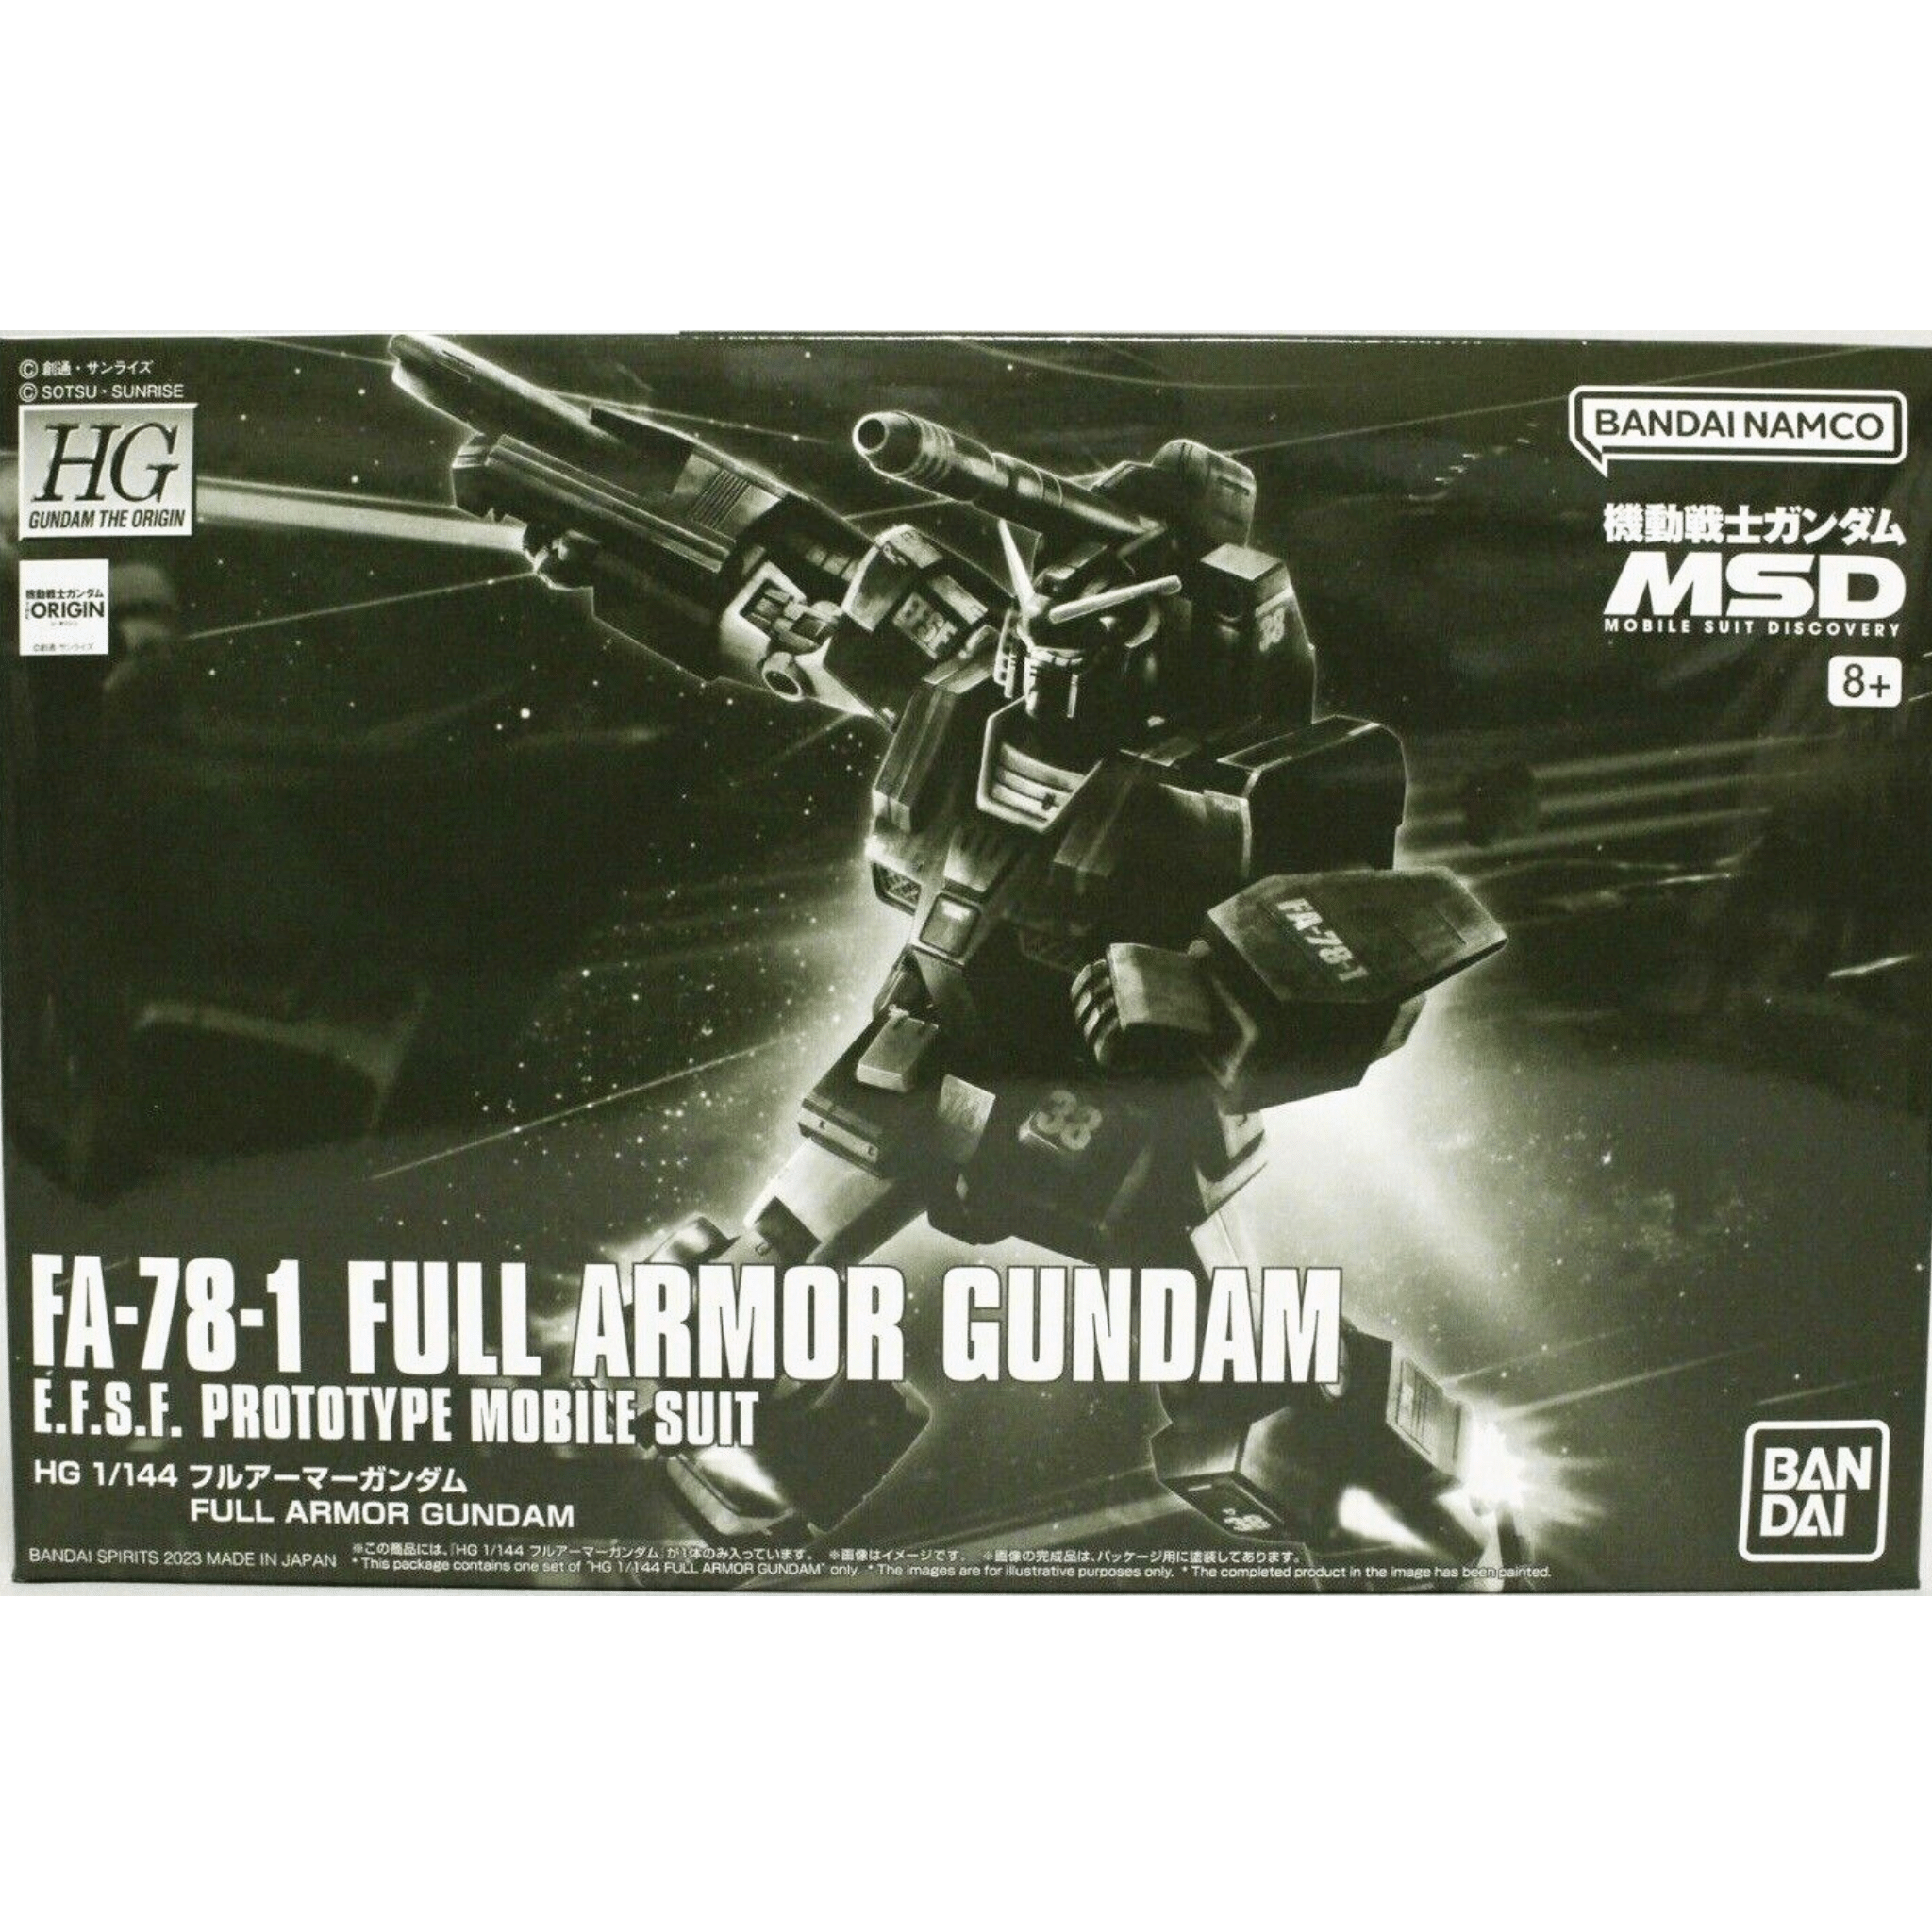 HG 1/144 The Origin MSD FA-78-1 Full Armor Gundam #5060757 by Bandai